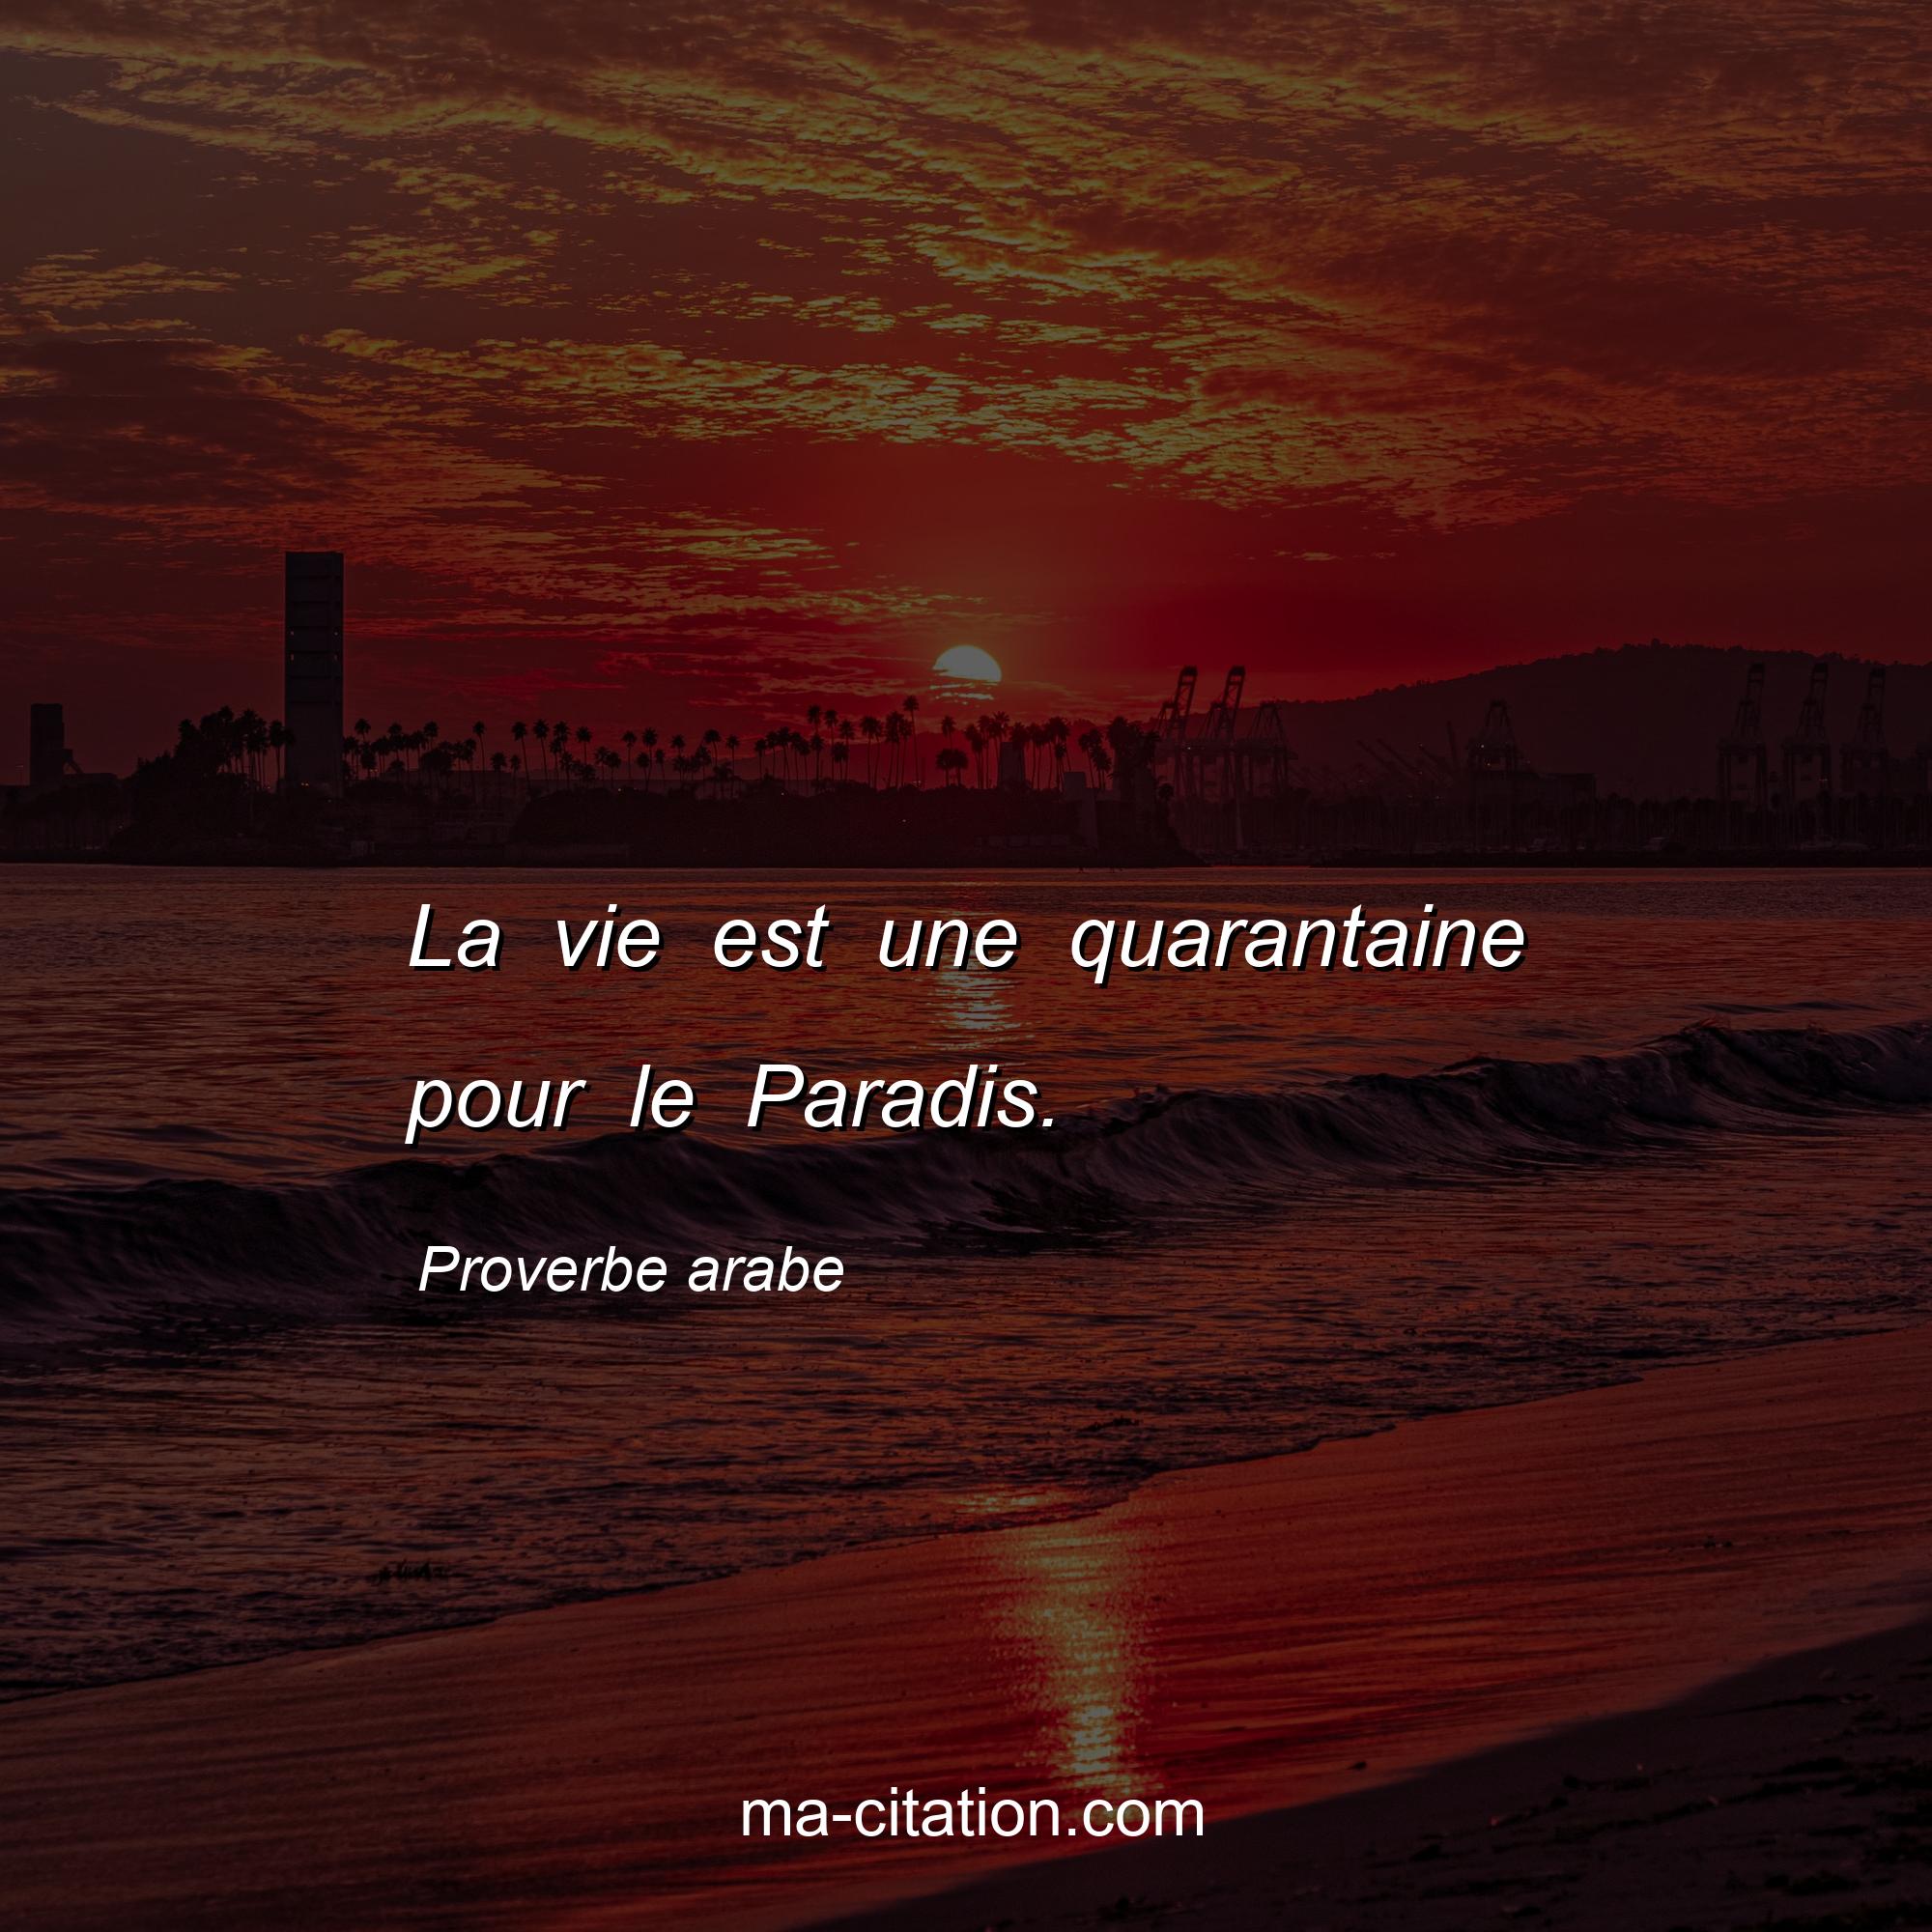 Proverbe arabe : La vie est une quarantaine pour le Paradis.